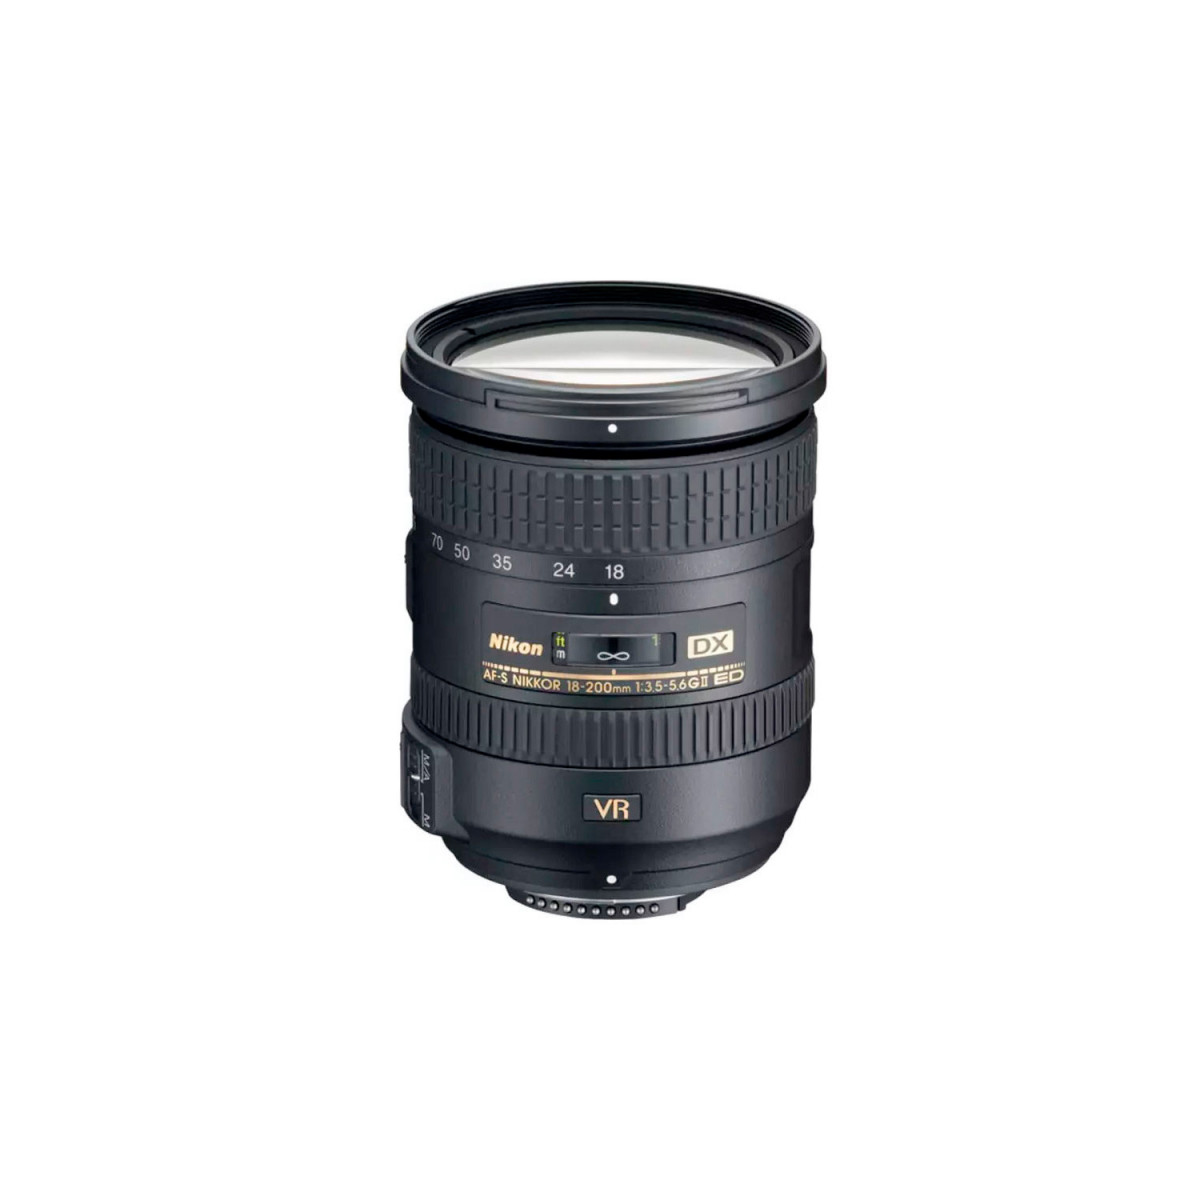 Nikon 18-200mm f/3.5-5.6G ED VR II